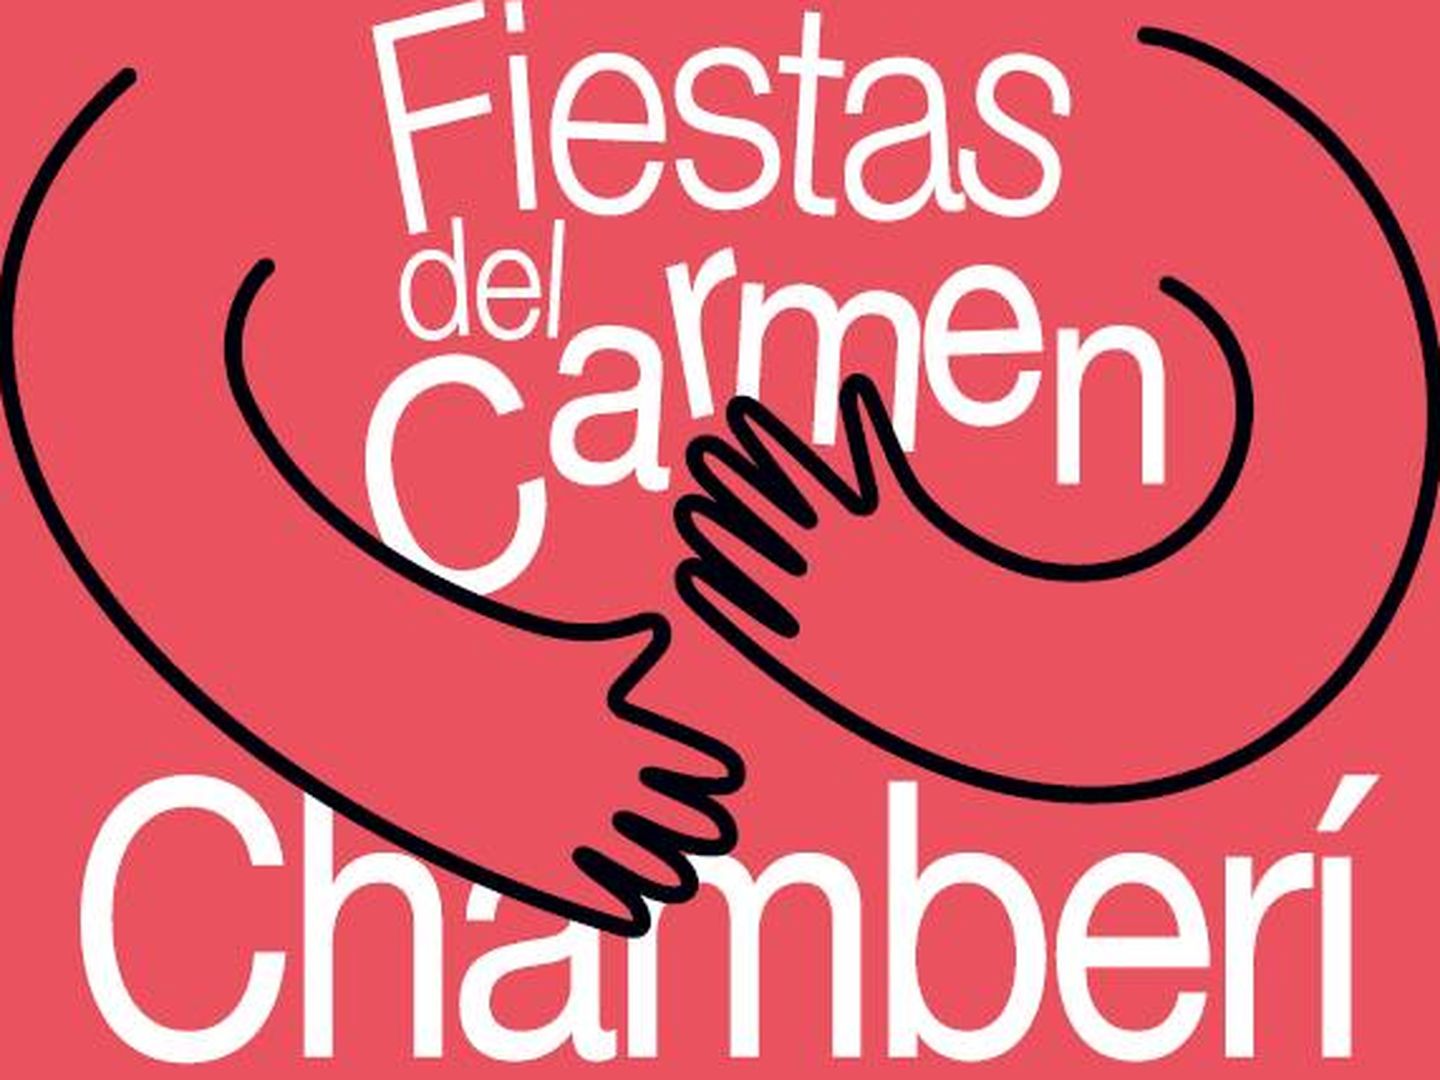 Cartel de las fiestas del Carmen de 2019 (Diario Madrid)